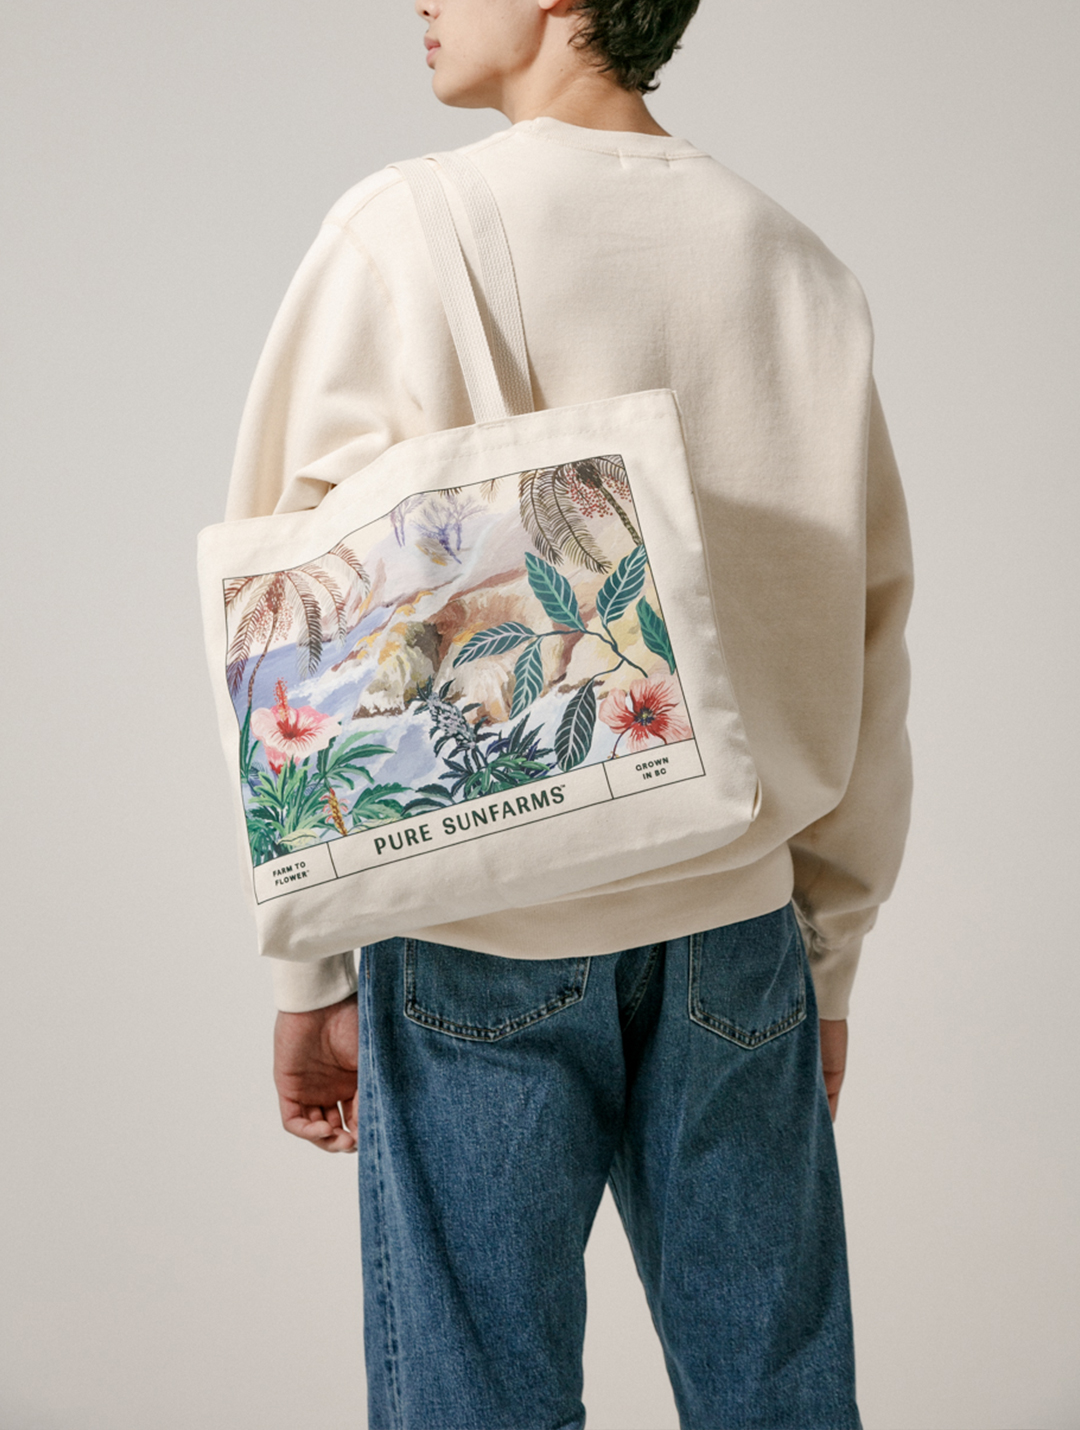 model wearing beige crewneck holding illustrated tote bag